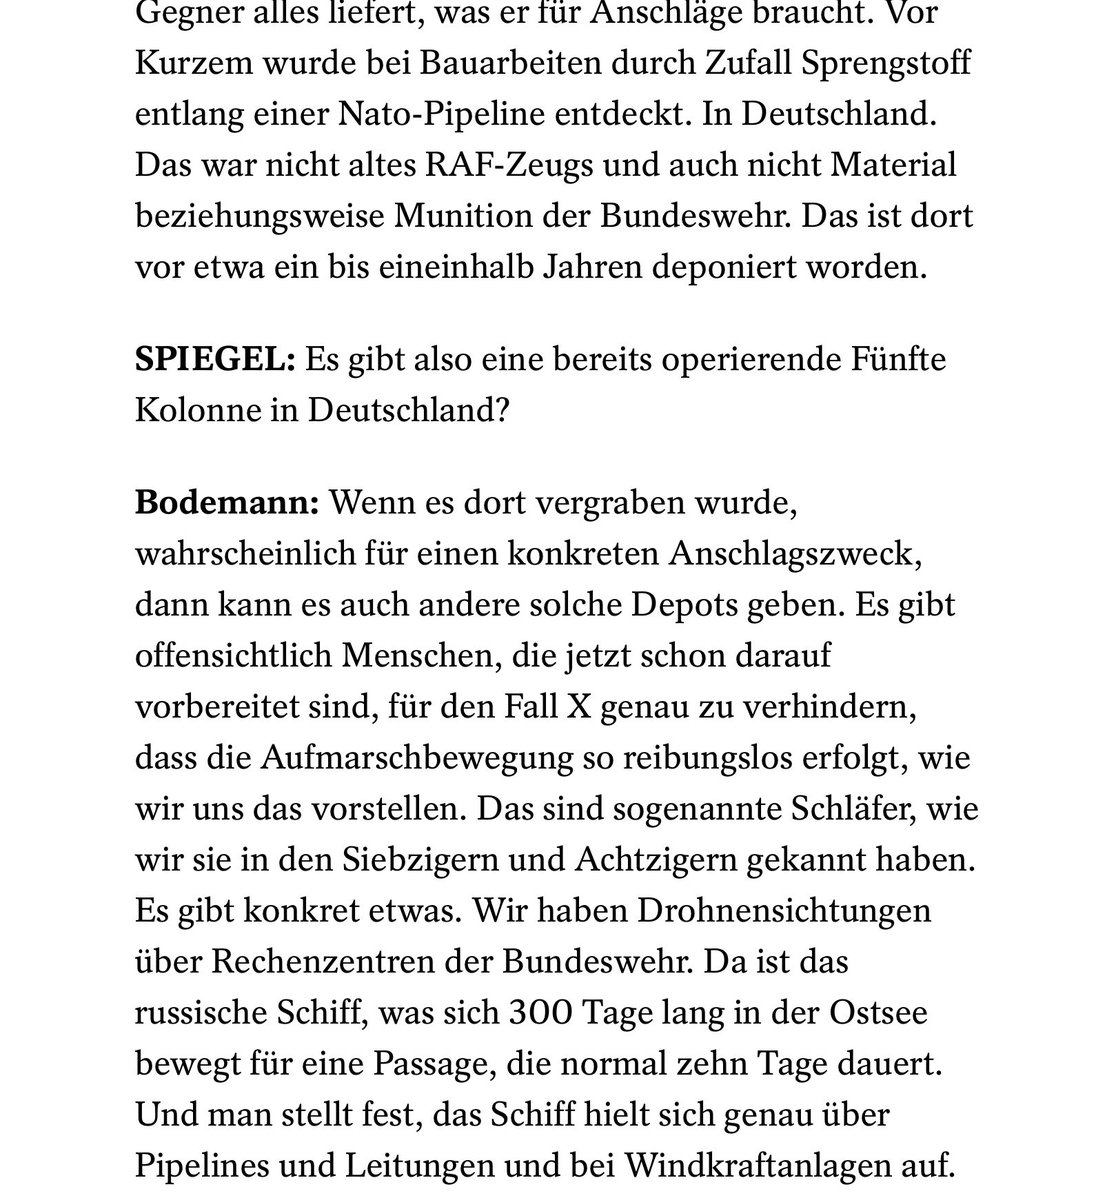 Mögliche Anschläge auf Pipelines, Rechenzentren, Windkraftanlagen? Bundeswehr-Generalleutnant André Bodemann im „Spiegel“: